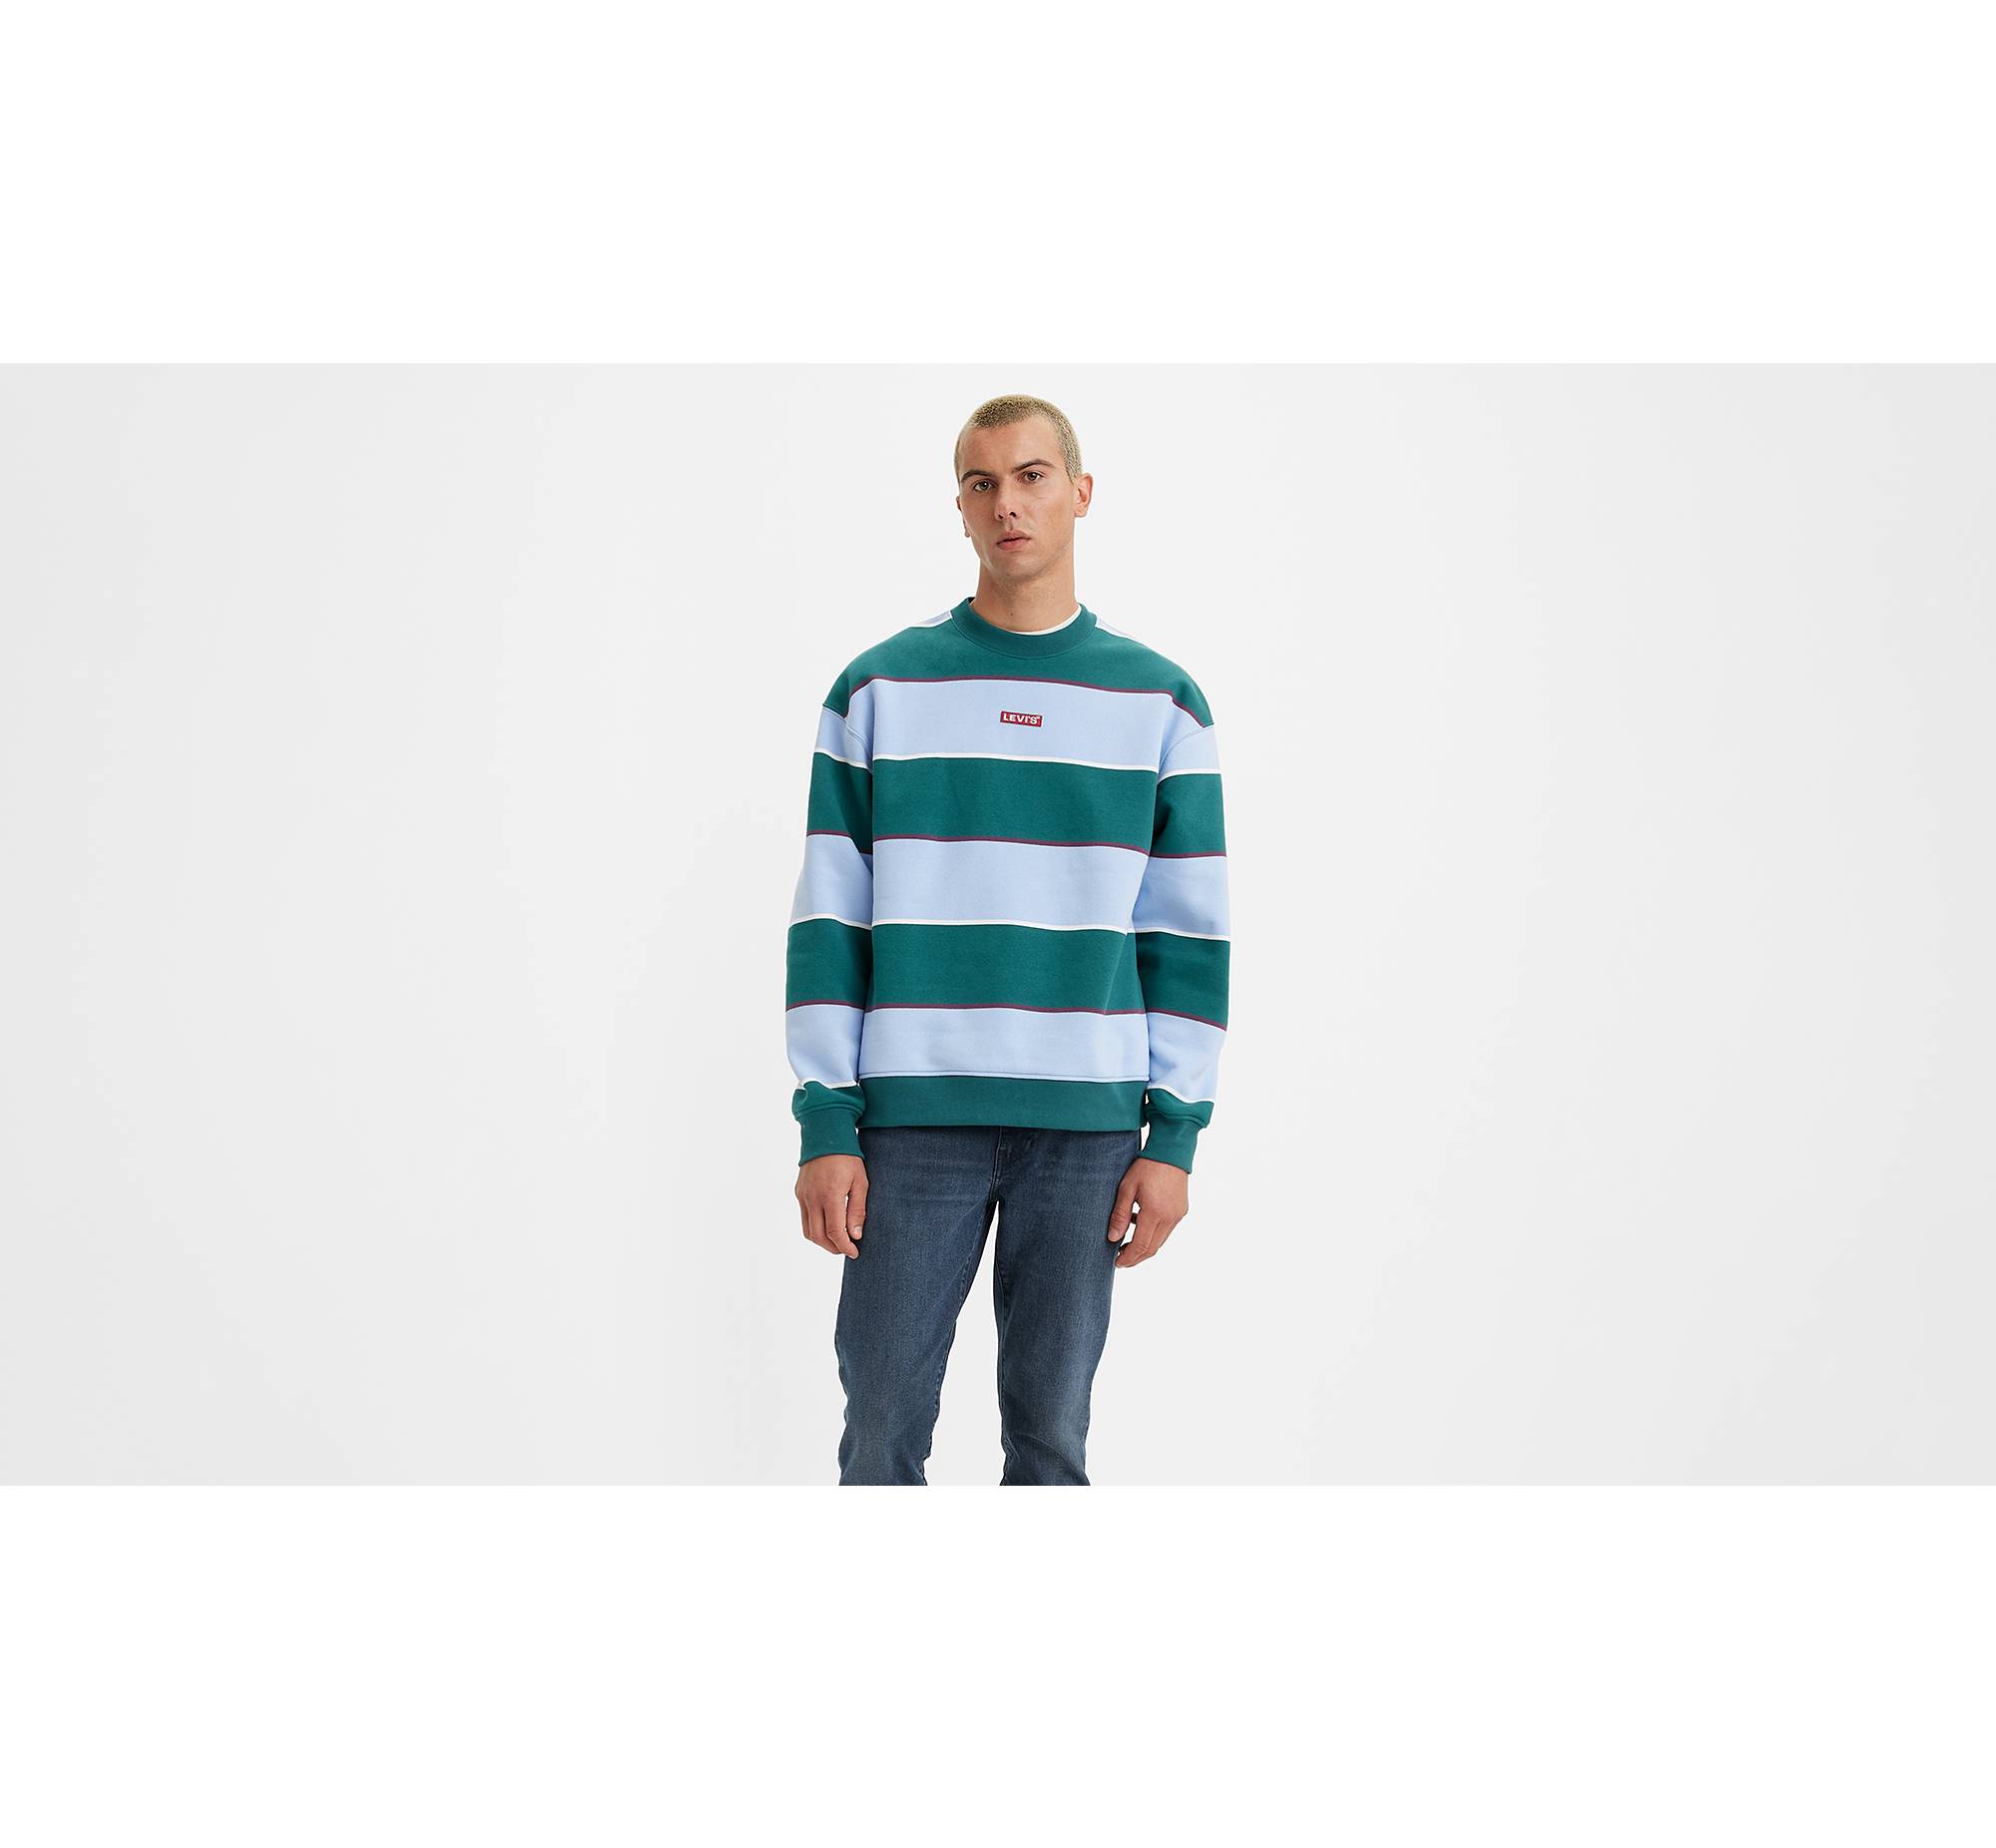  Lacoste Long Sleeve Multi-Logo Crewneck Sweatshirt : Clothing,  Shoes & Jewelry